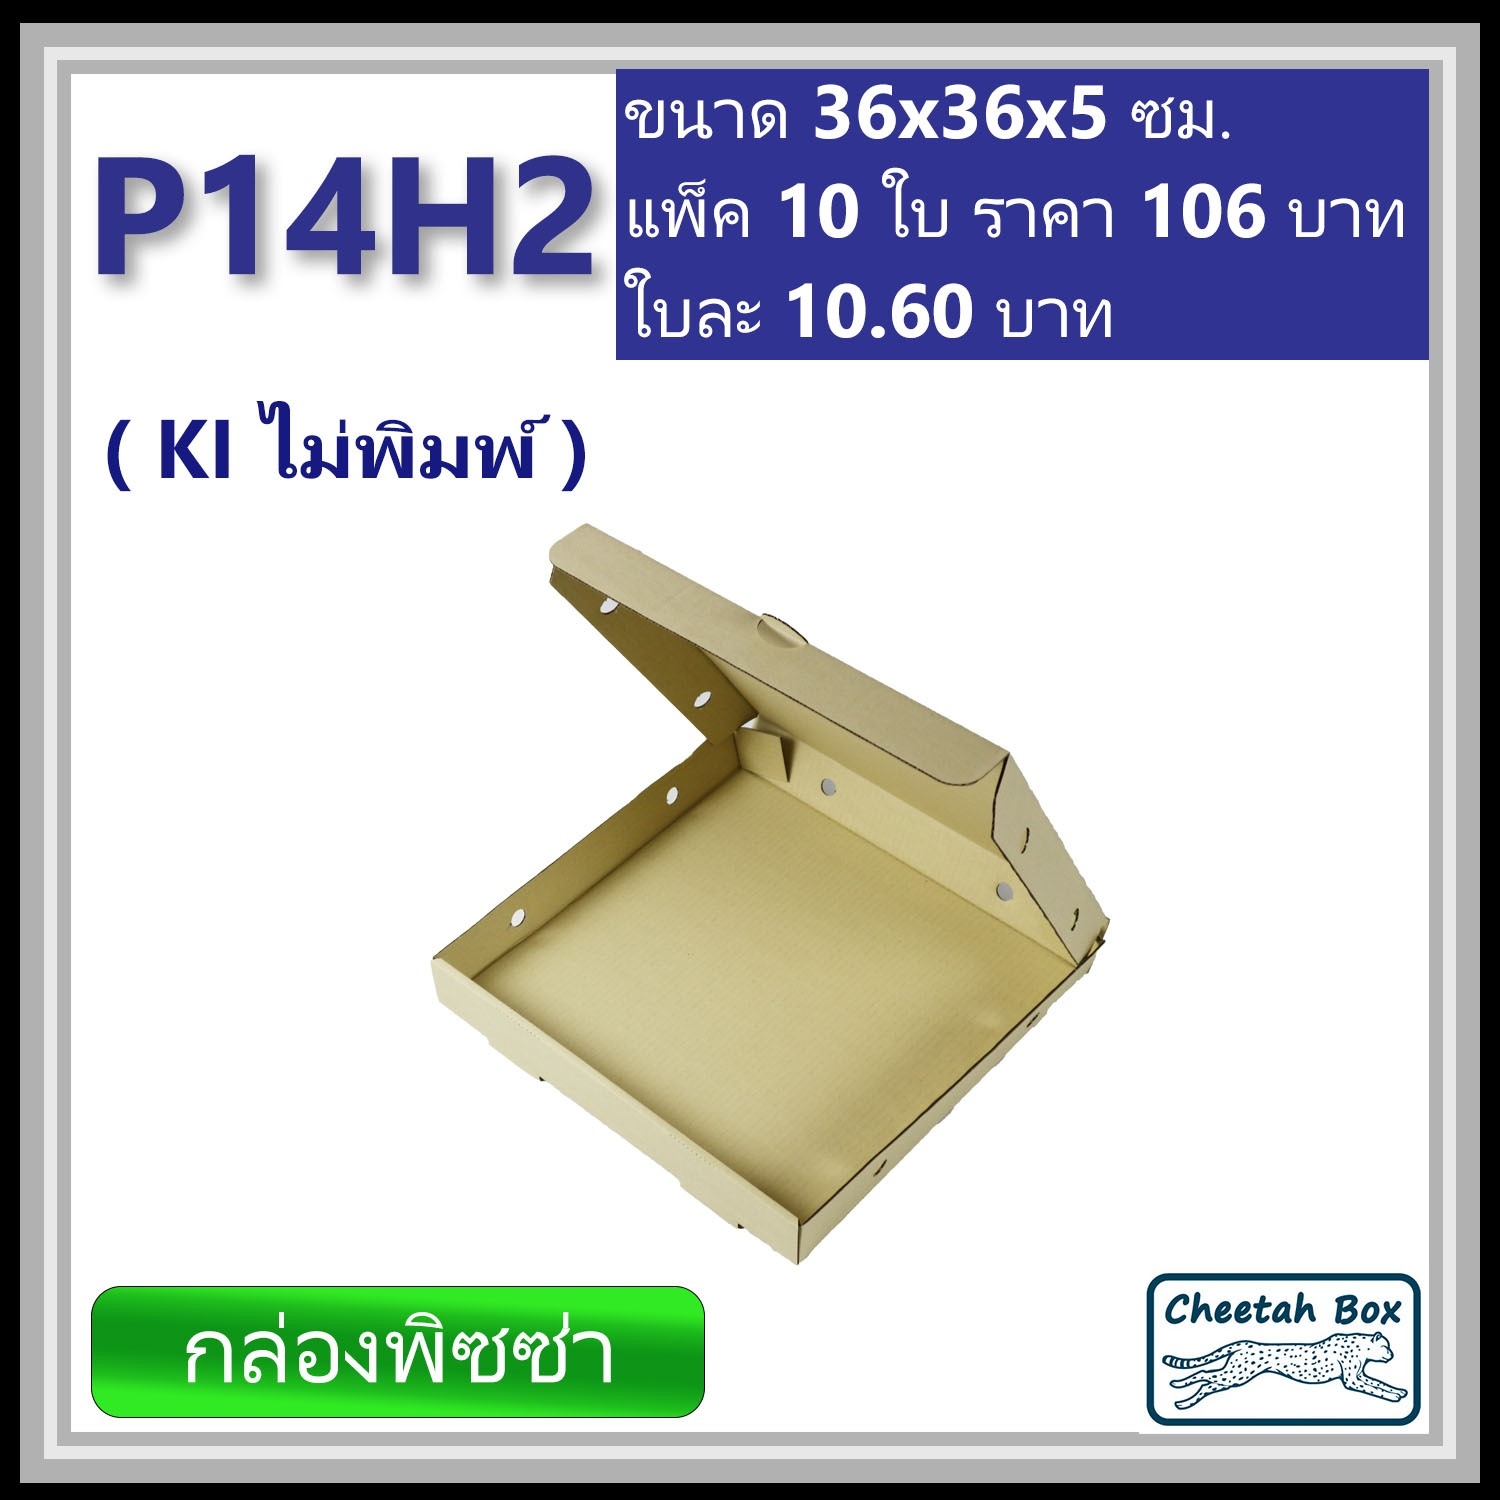 กล่องพิซซ่า 14 นิ้วสูง 2 นิ้ว รหัส P14H2 ไม่พิมพ์ (Pizza Box) ขนาด 36W x 36L x 5H cm.